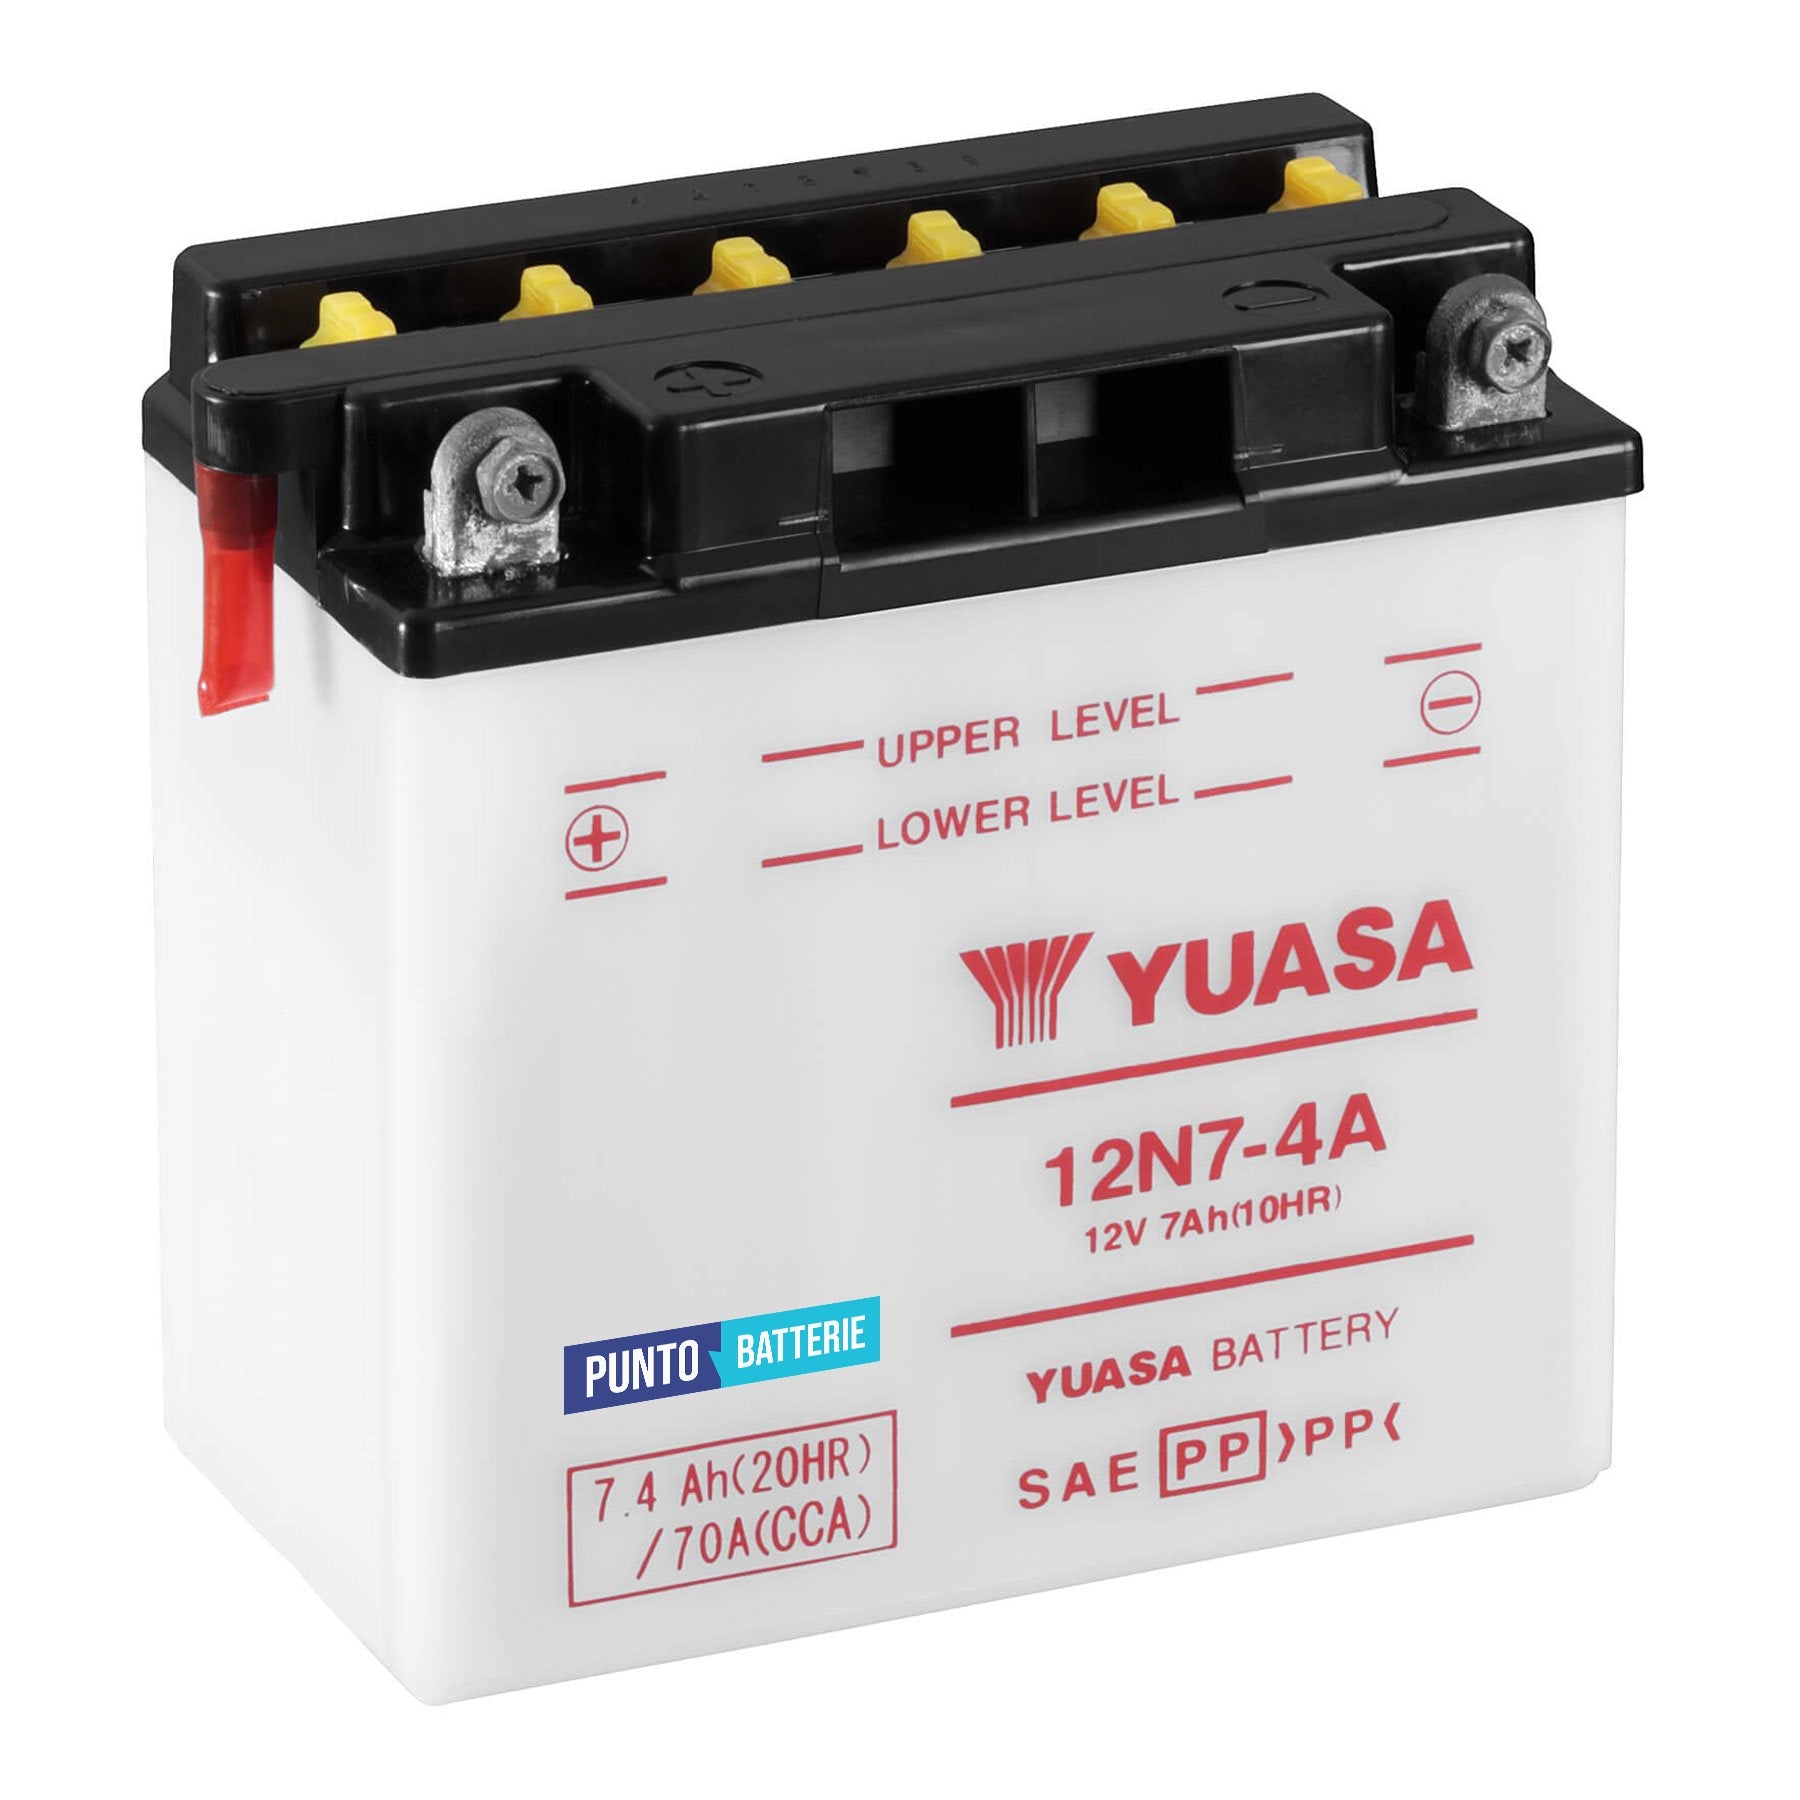 Batteria originale Yuasa Conventional 12N7-4A, dimensioni 135 x 75 x 133, polo positivo a sinistra, 12 volt, 7 amperora, 70 ampere. Batteria per moto, scooter e powersport.